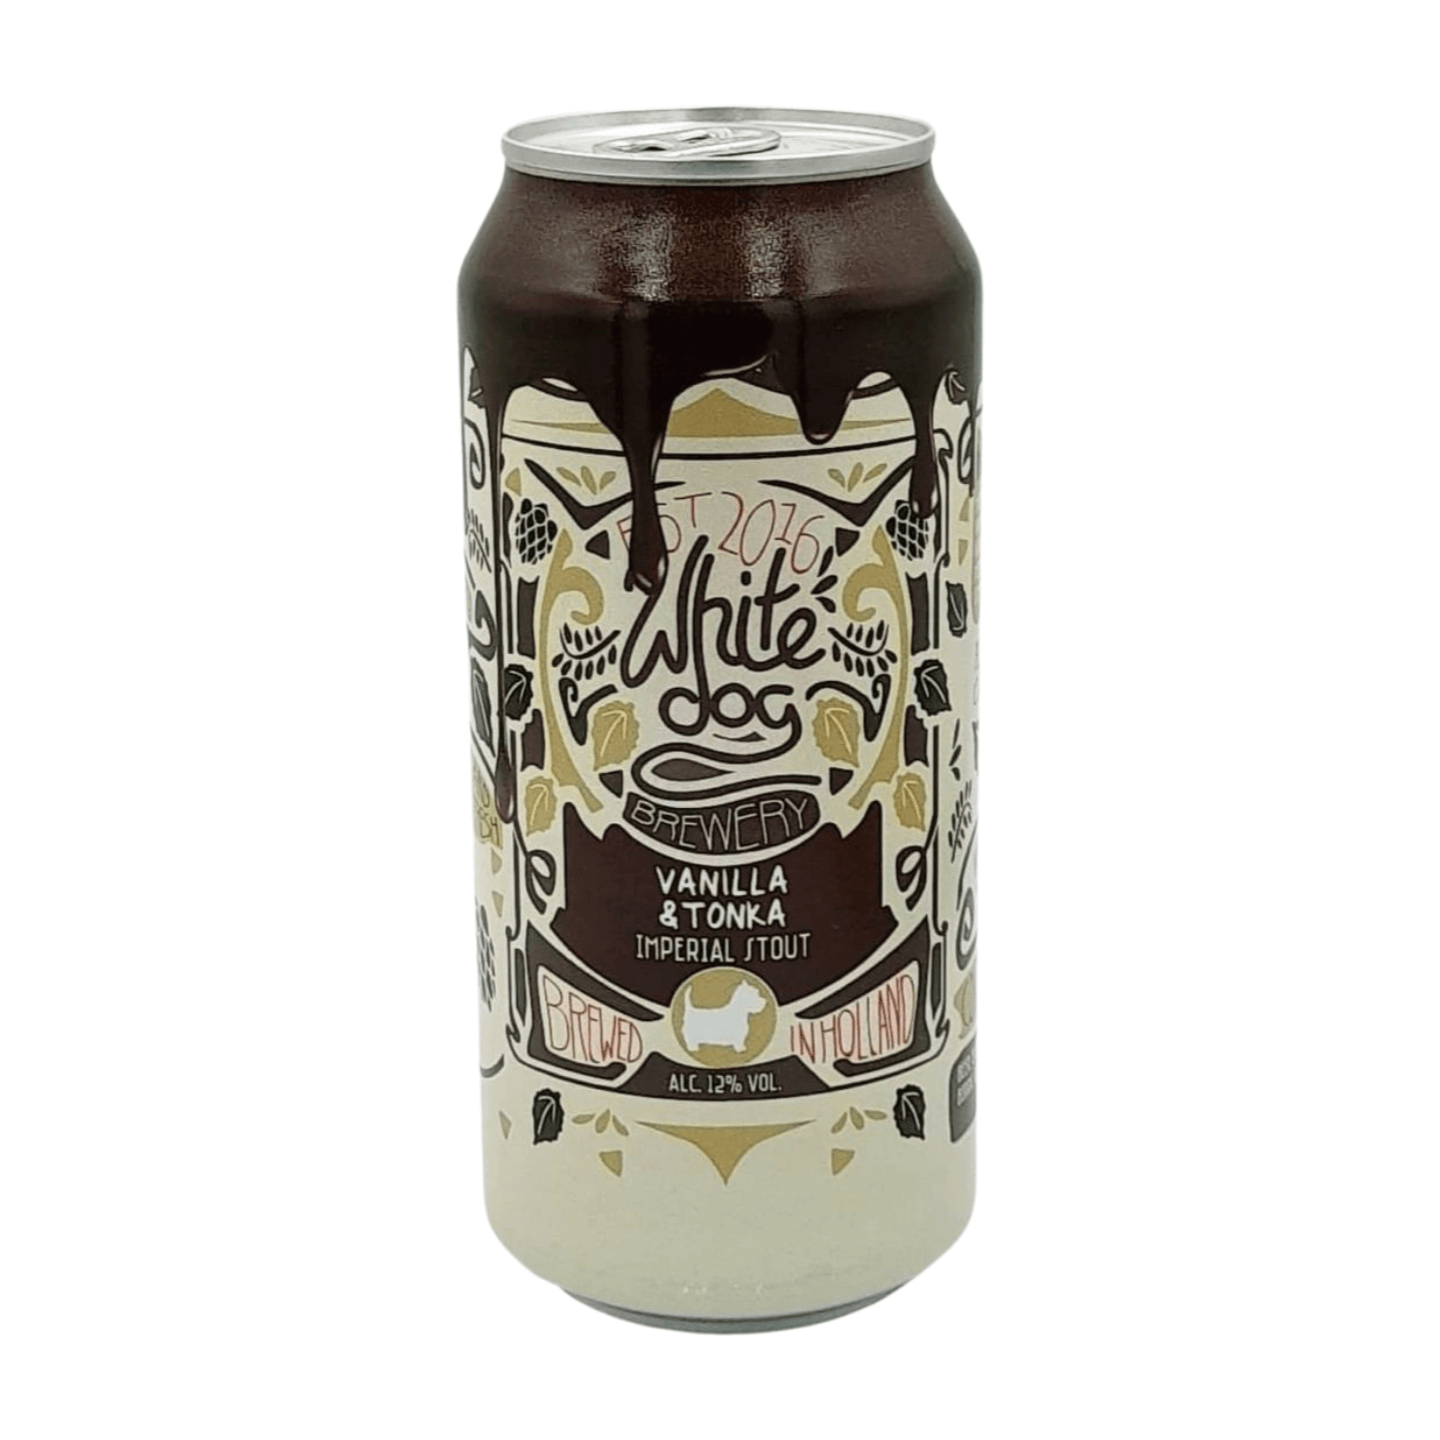 White Dog Brewery Vanilla & Tonka | Imperial Stout Webshop Online Verdins Bierwinkel Rotterdam